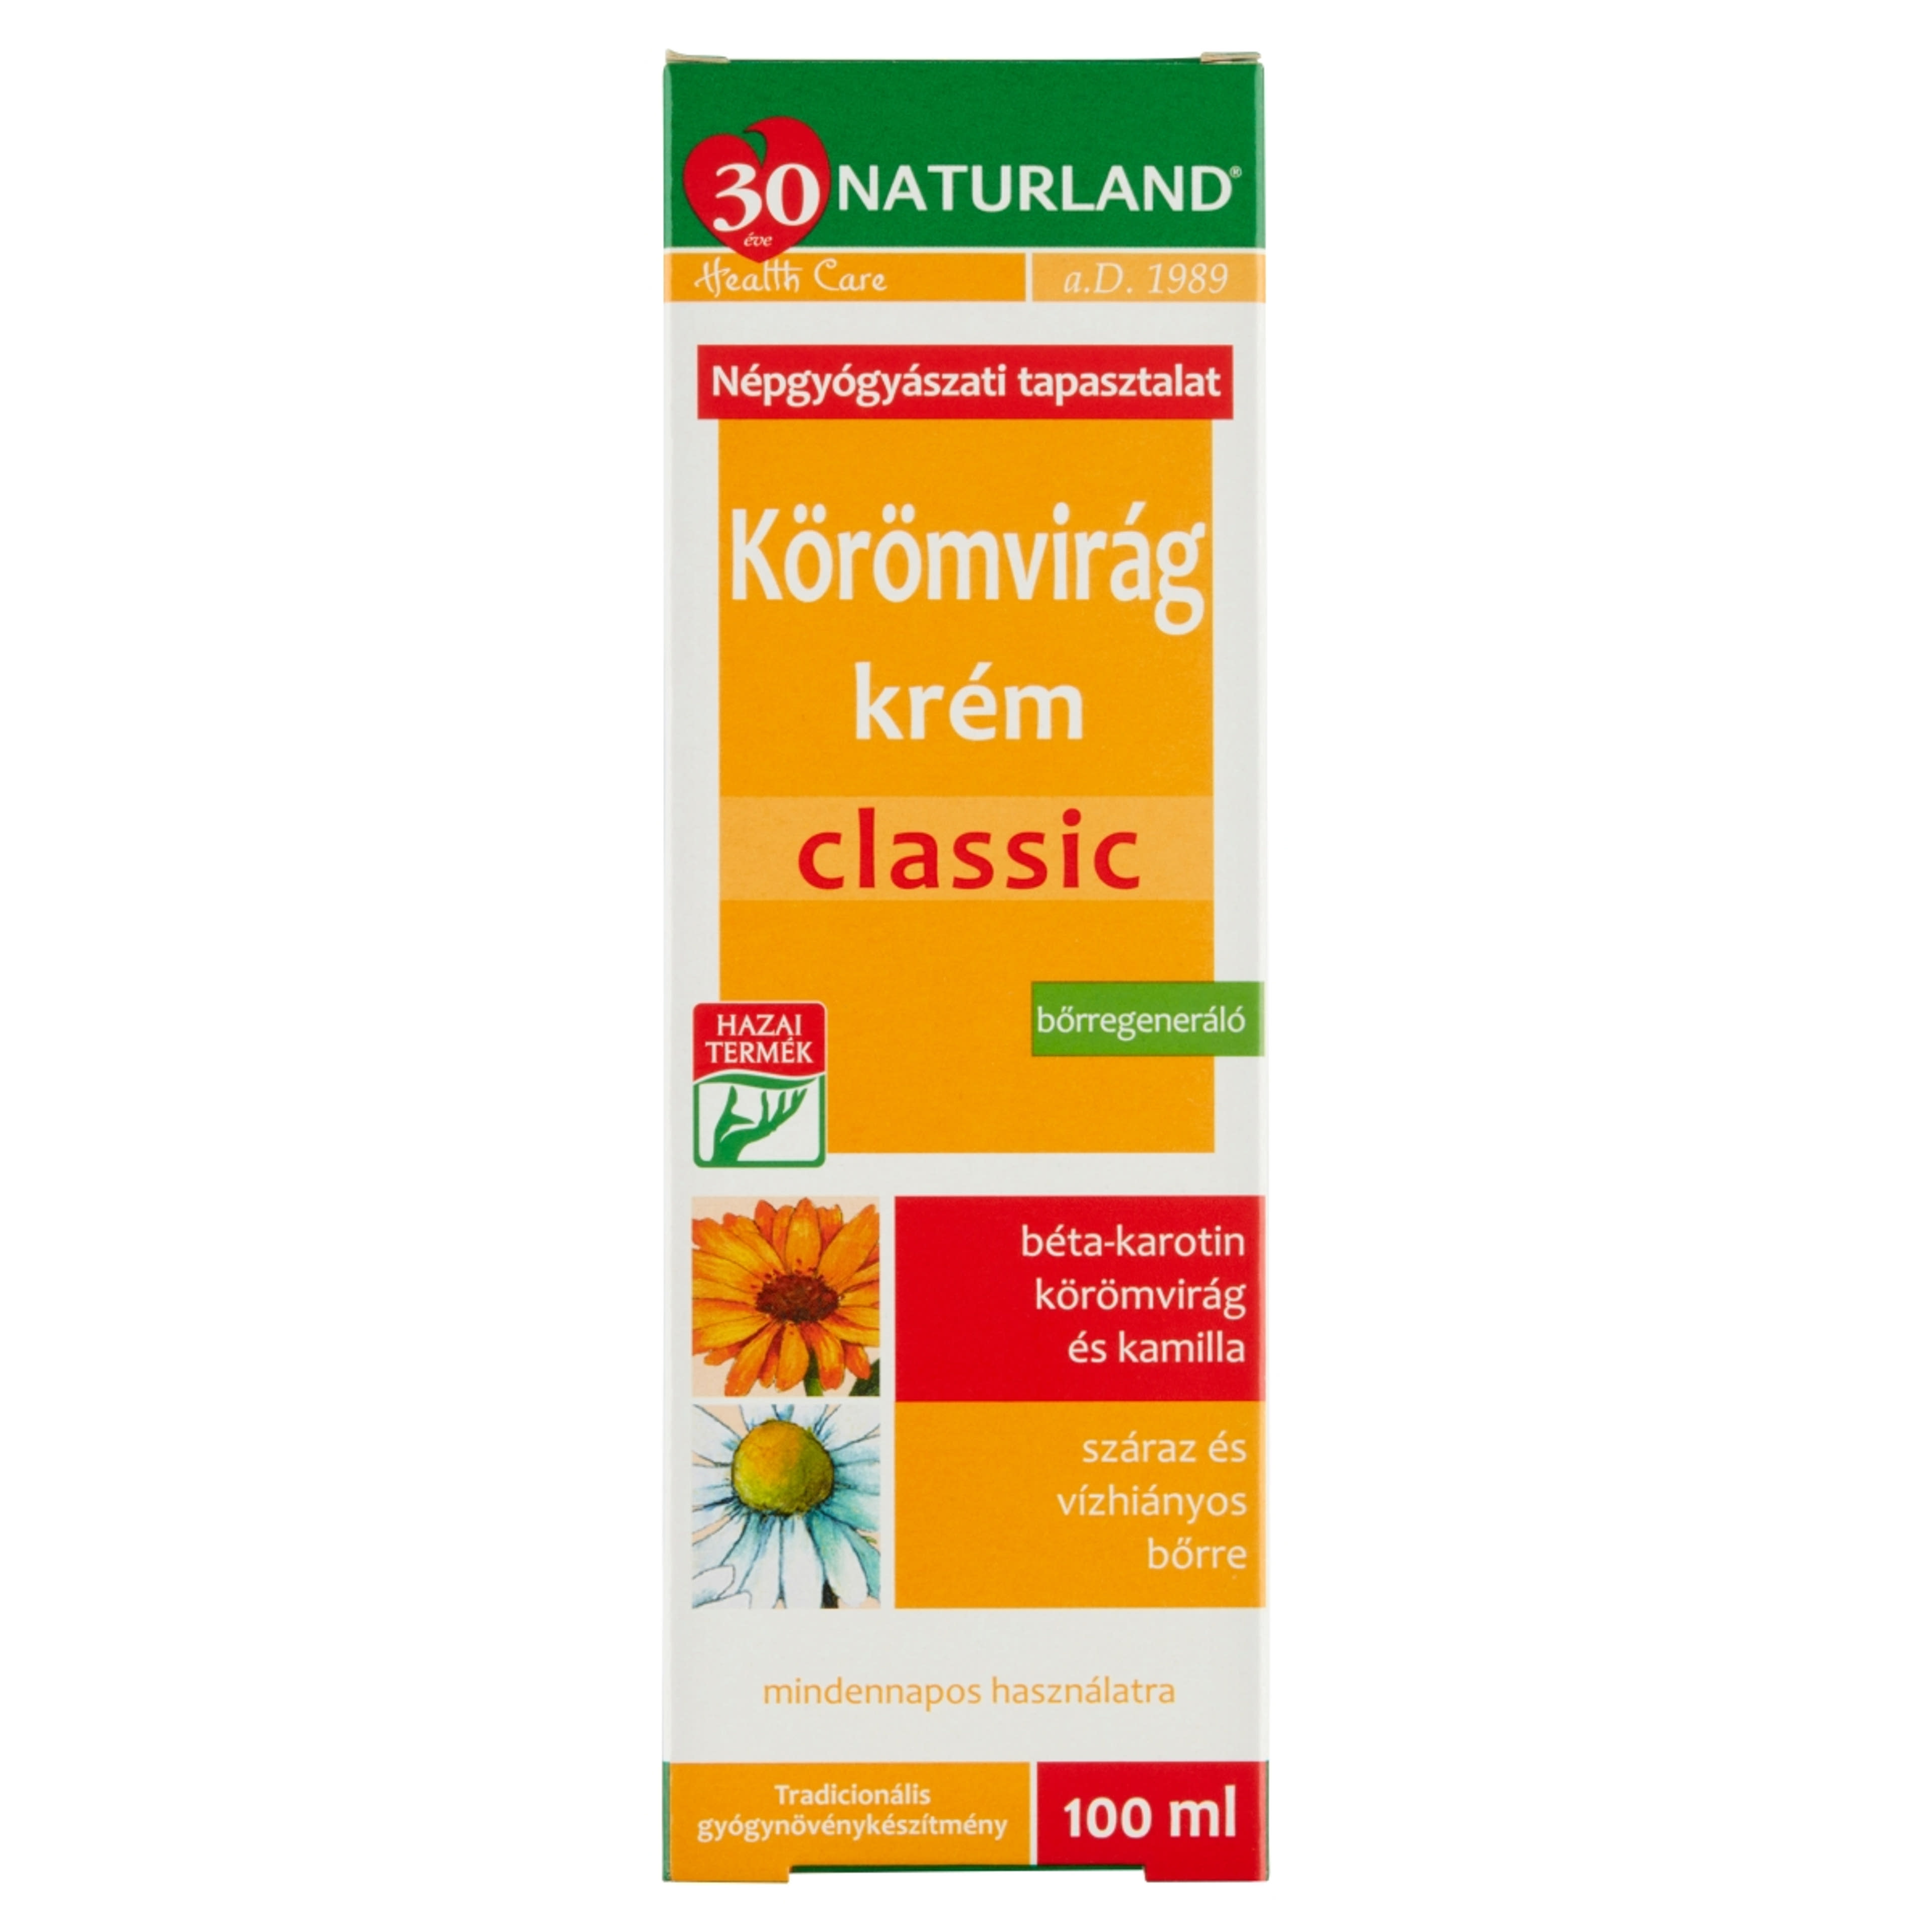 Naturland Classic Körömvirág Krém - 100 ml